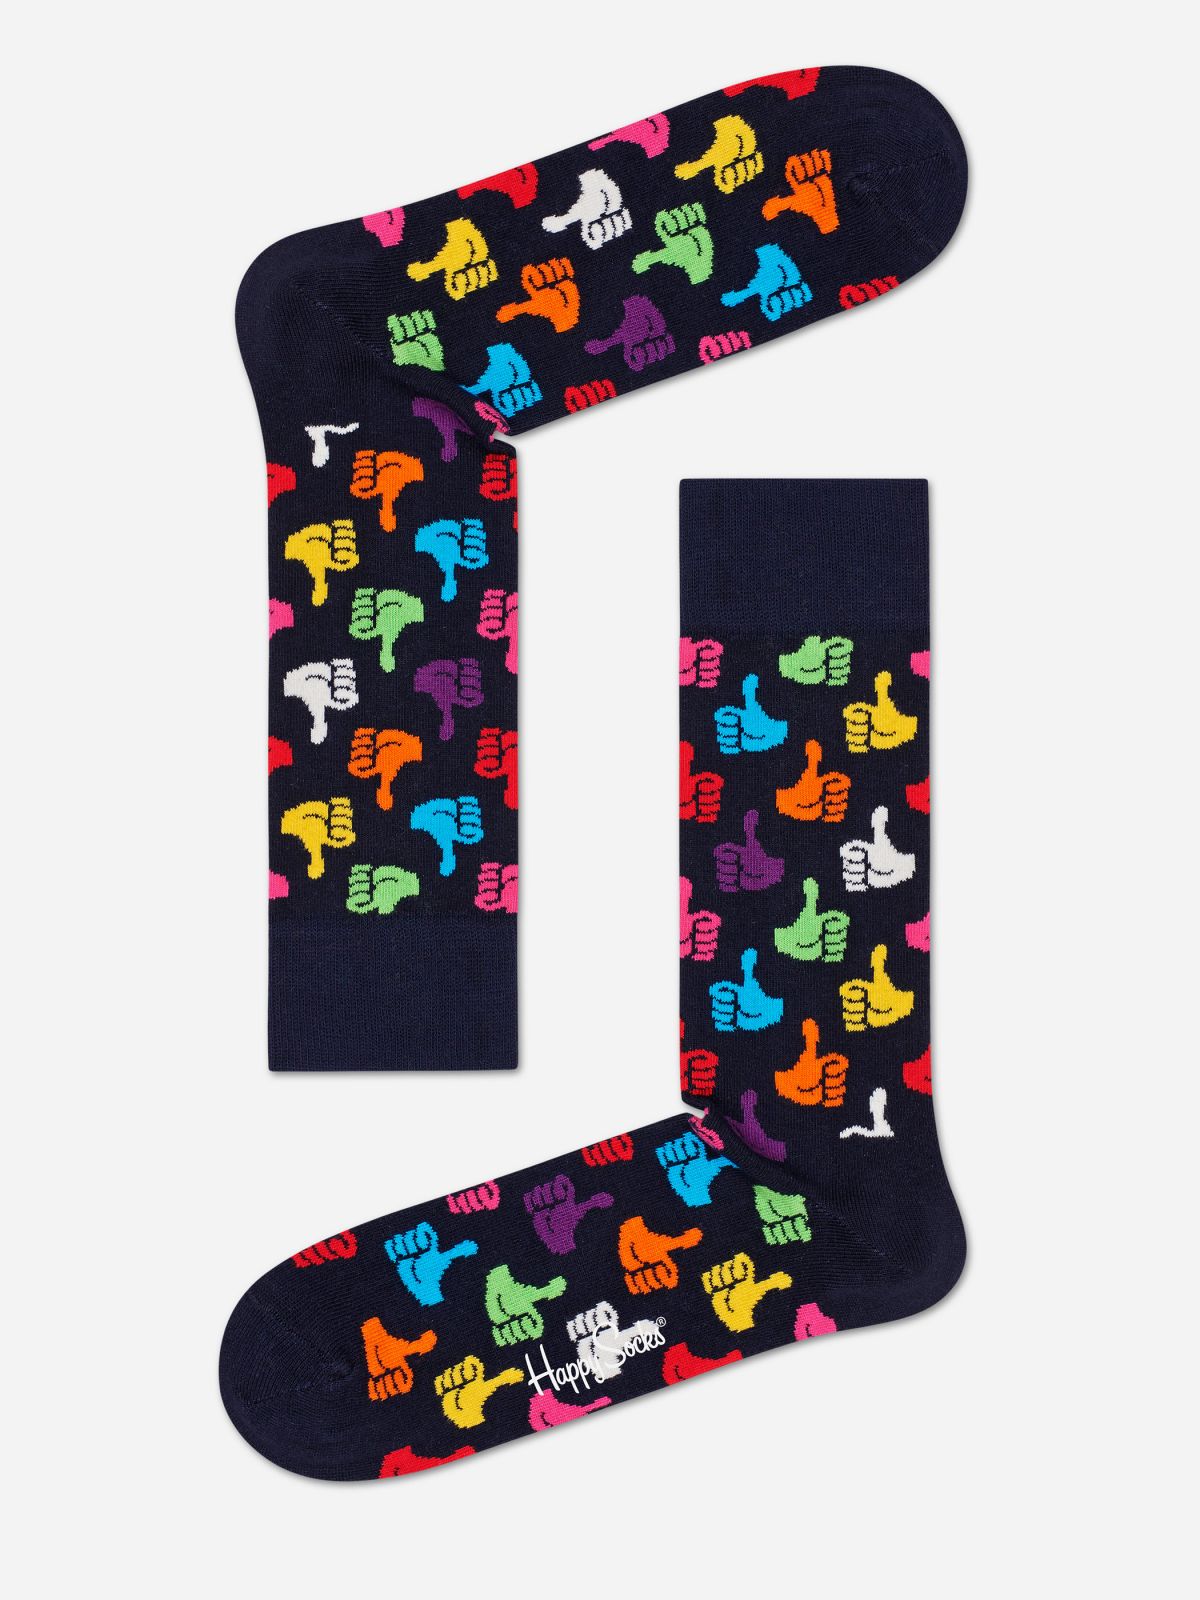  זוג גרביים בדוגמת Thumbs up / נשים של HAPPY SOCKS